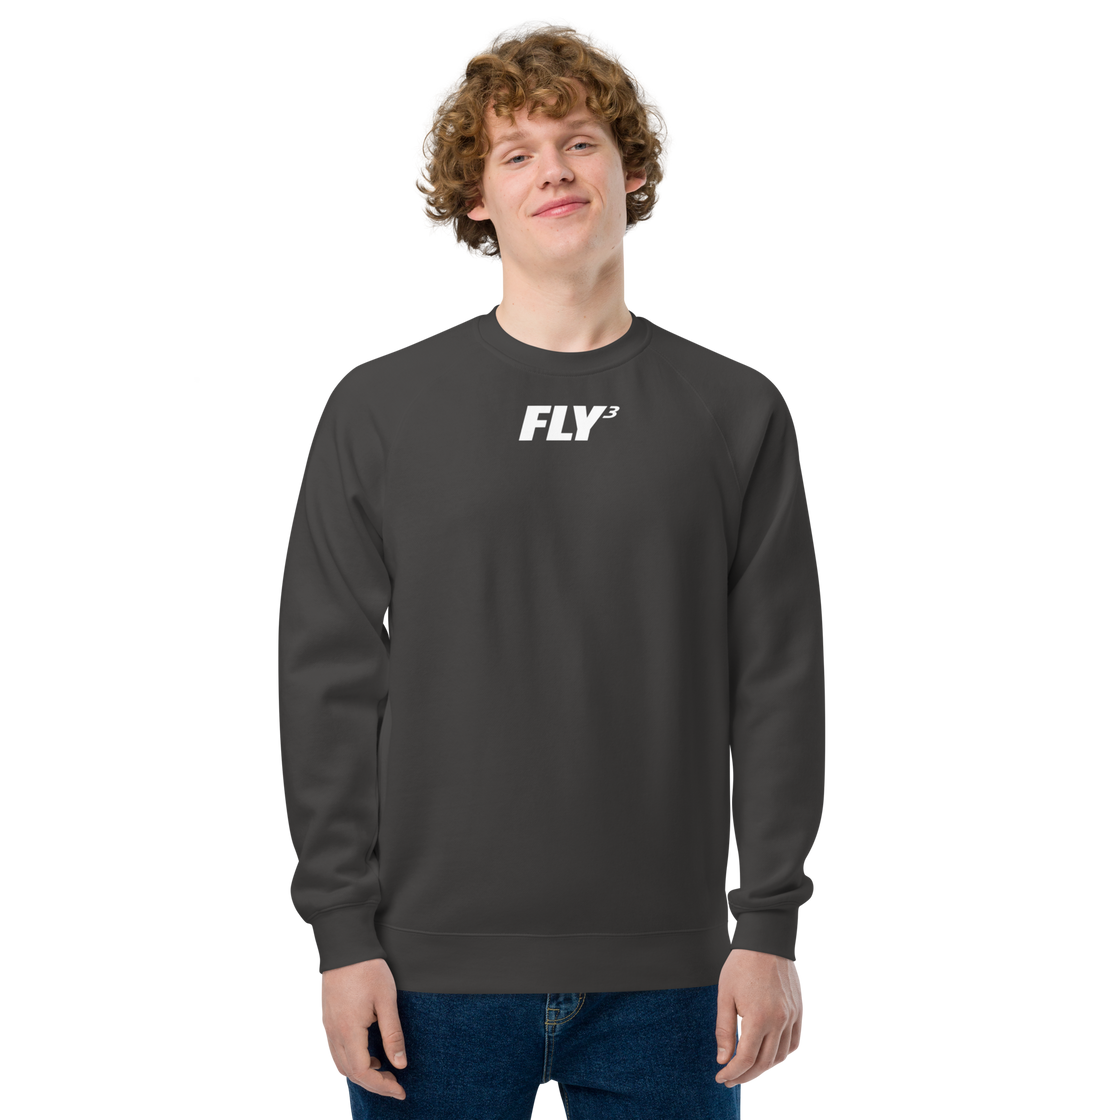 FLY³ raglan sweatshirt (Australia, New Zeland Exclusive)